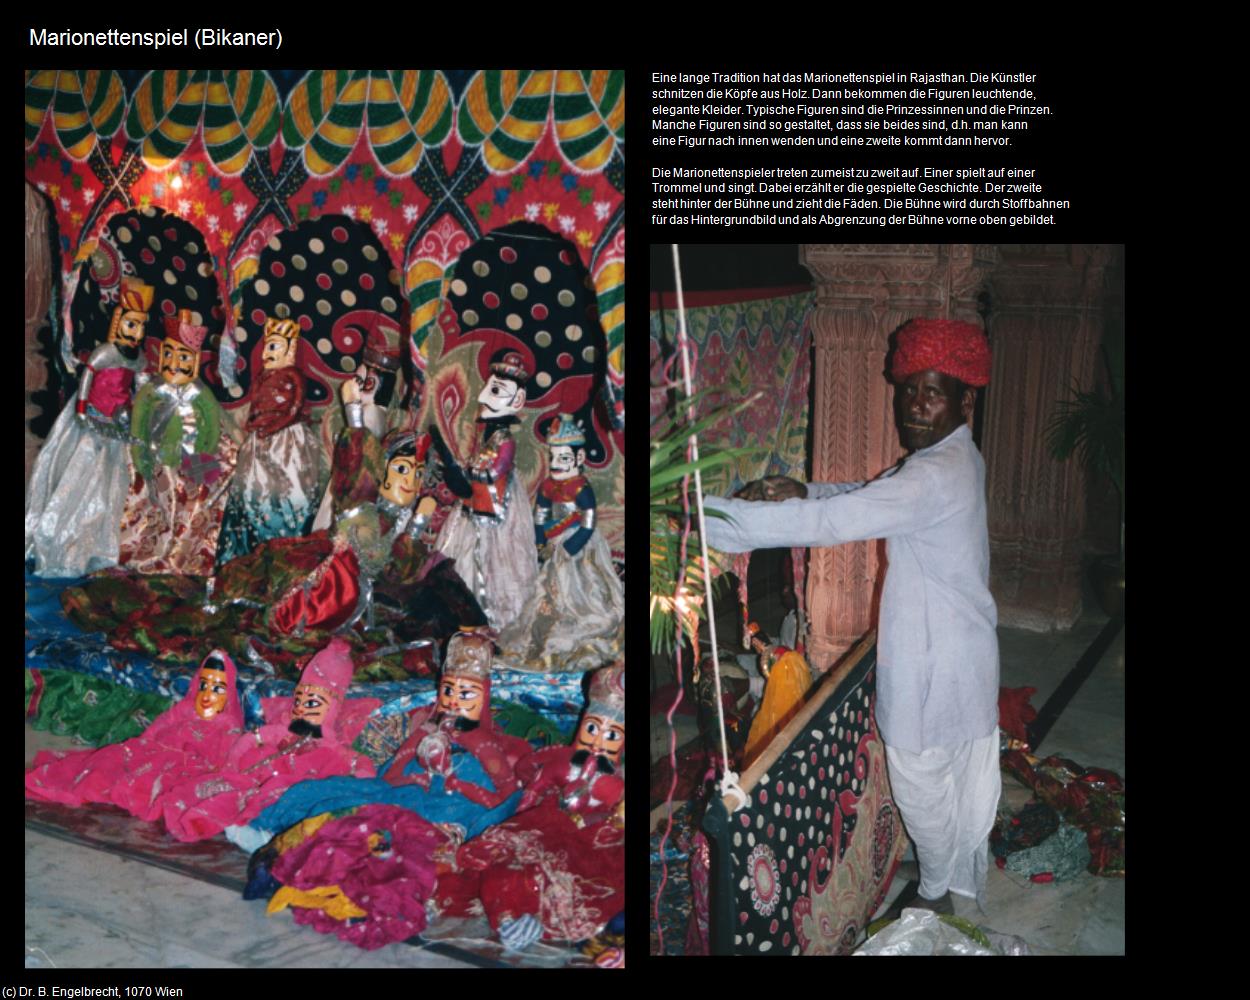 Marionettenspiel (Bikaner) in Rajasthan - das Land der Könige